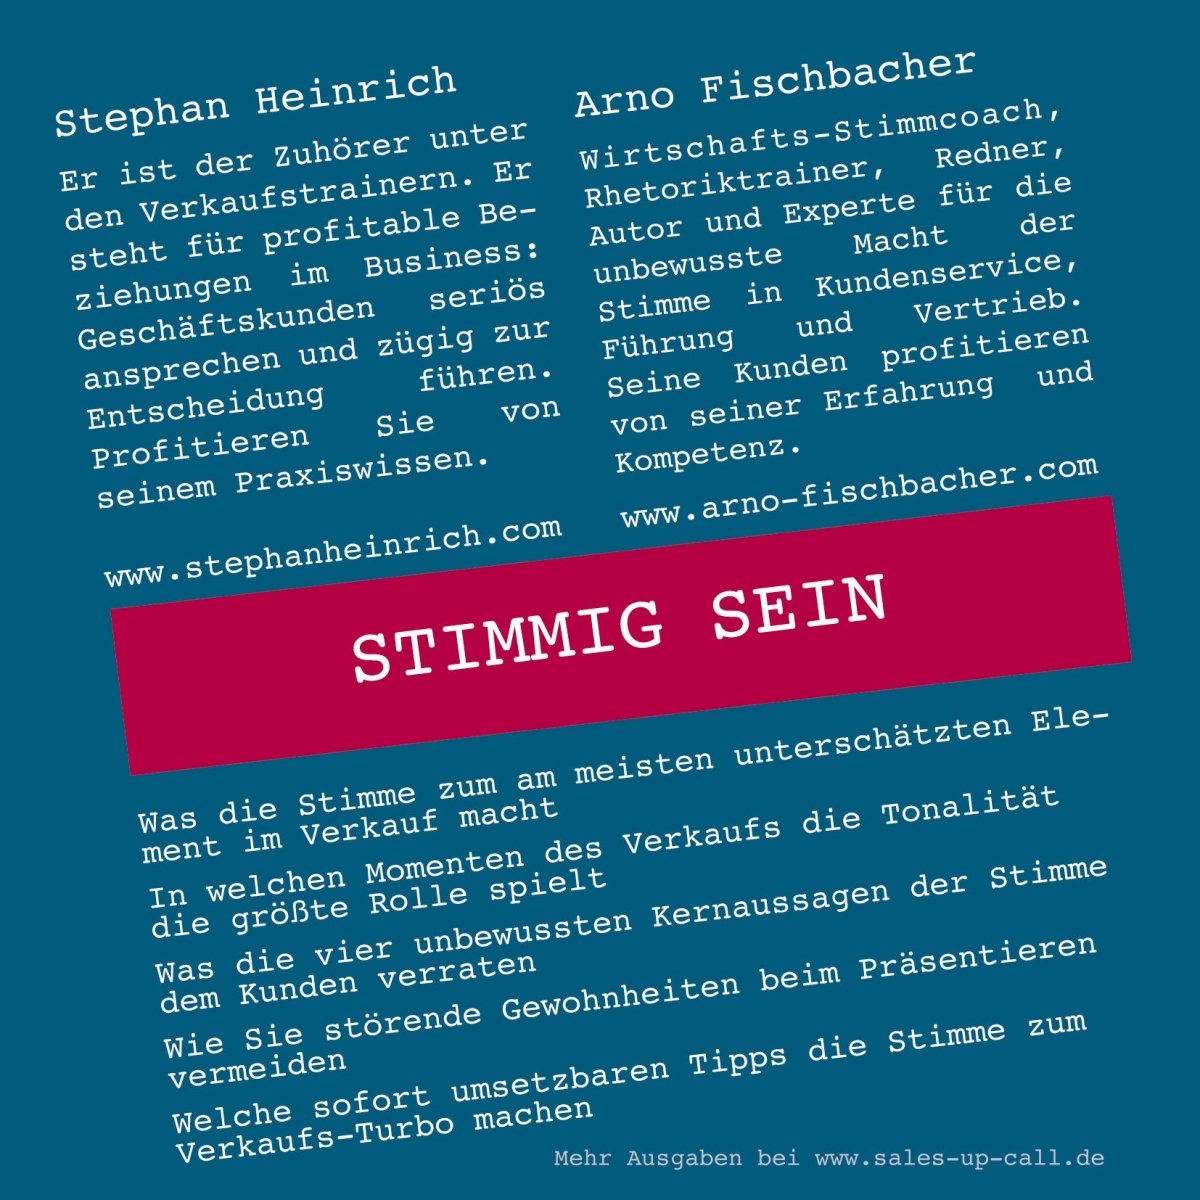 Stimmig sein - Sales-up-Call - Stephan Heinrich